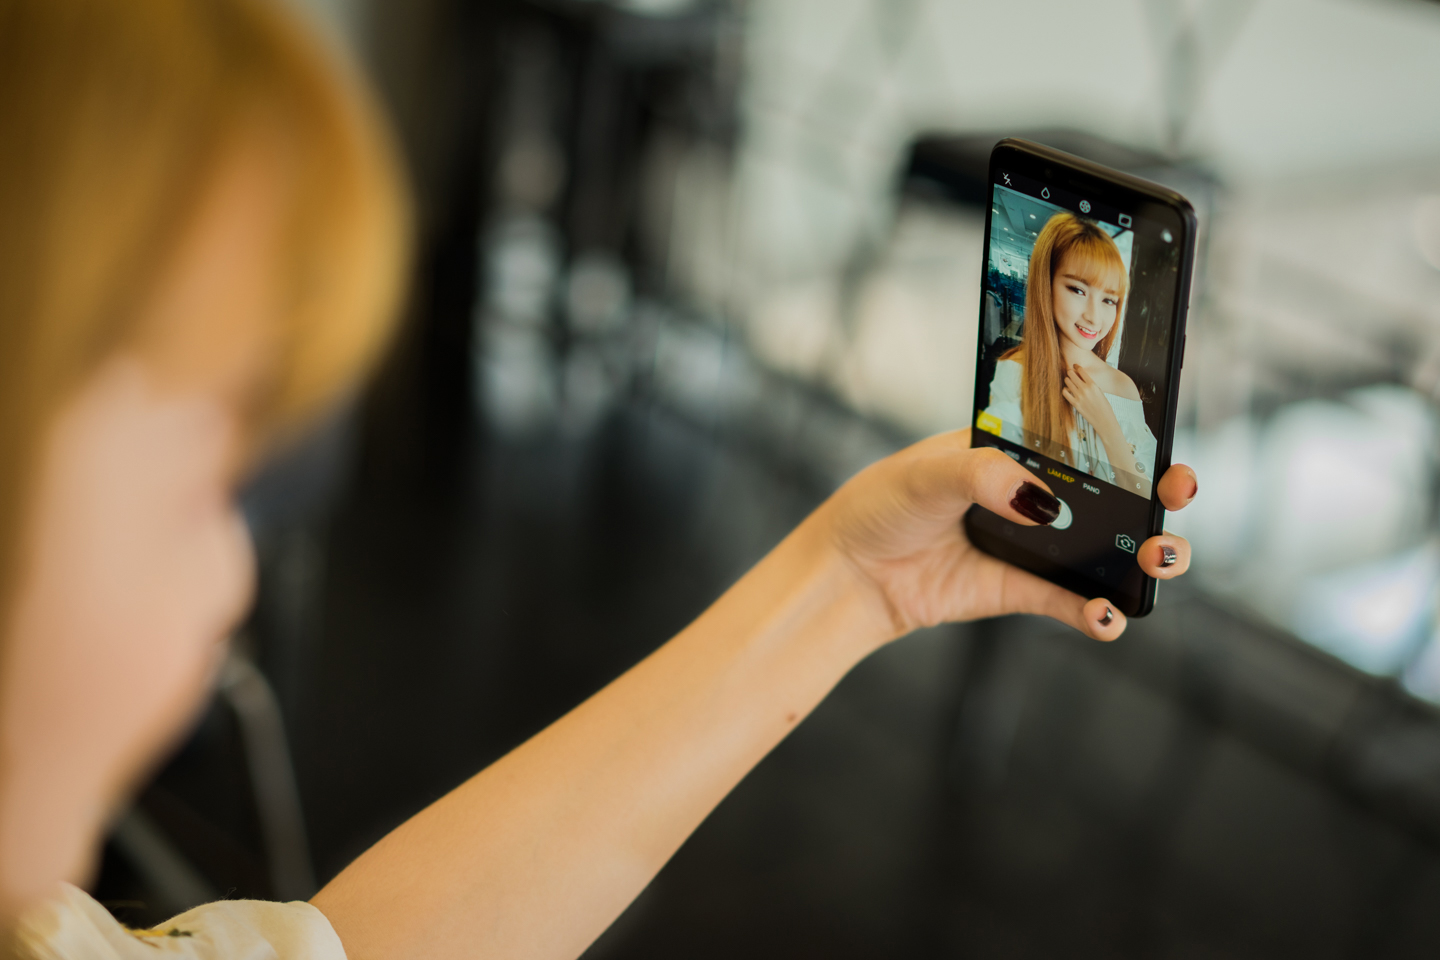 Đánh giá OPPO F5
Youth:
Mang camera AI đến gần hơn với người tiêu dùng